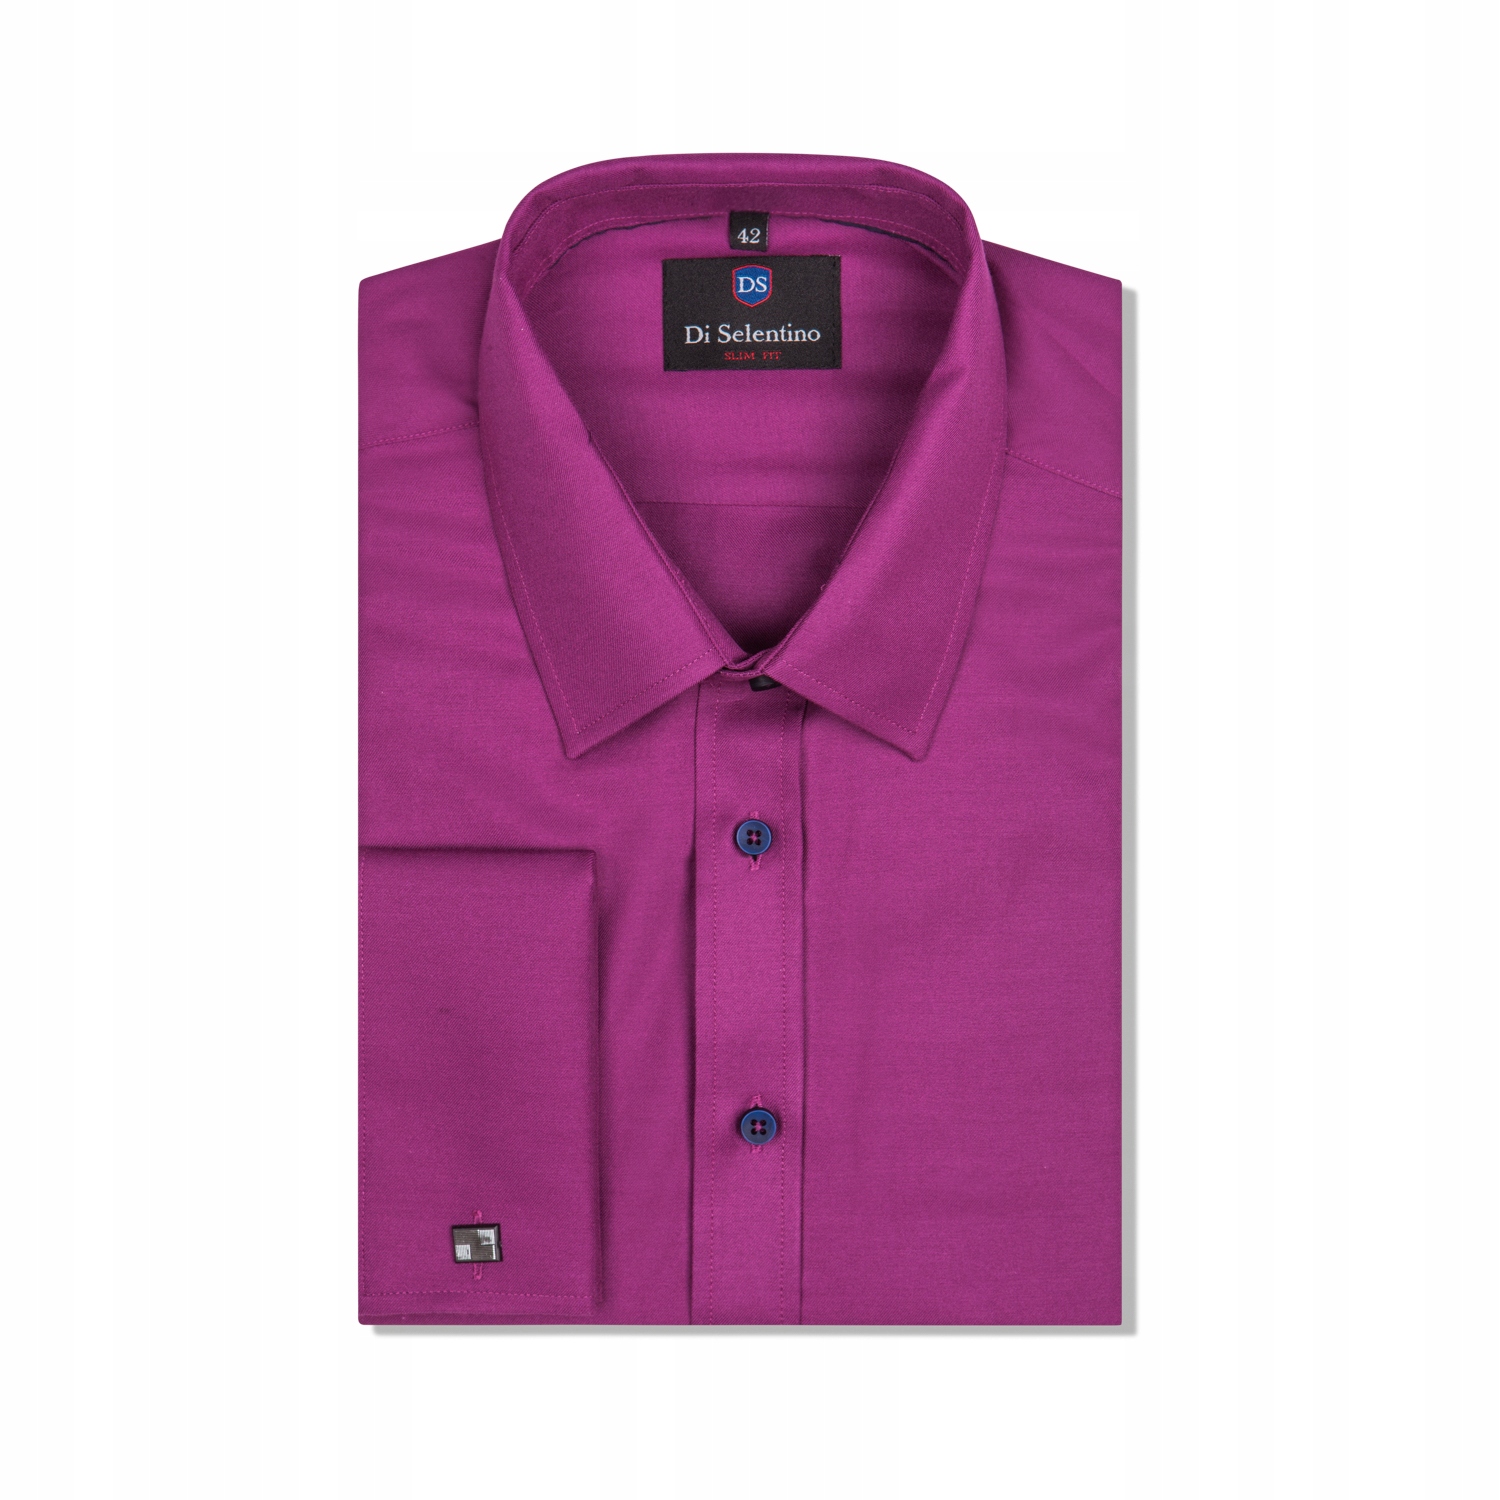 Pánske tričko hladké fialové na sponu custom 48